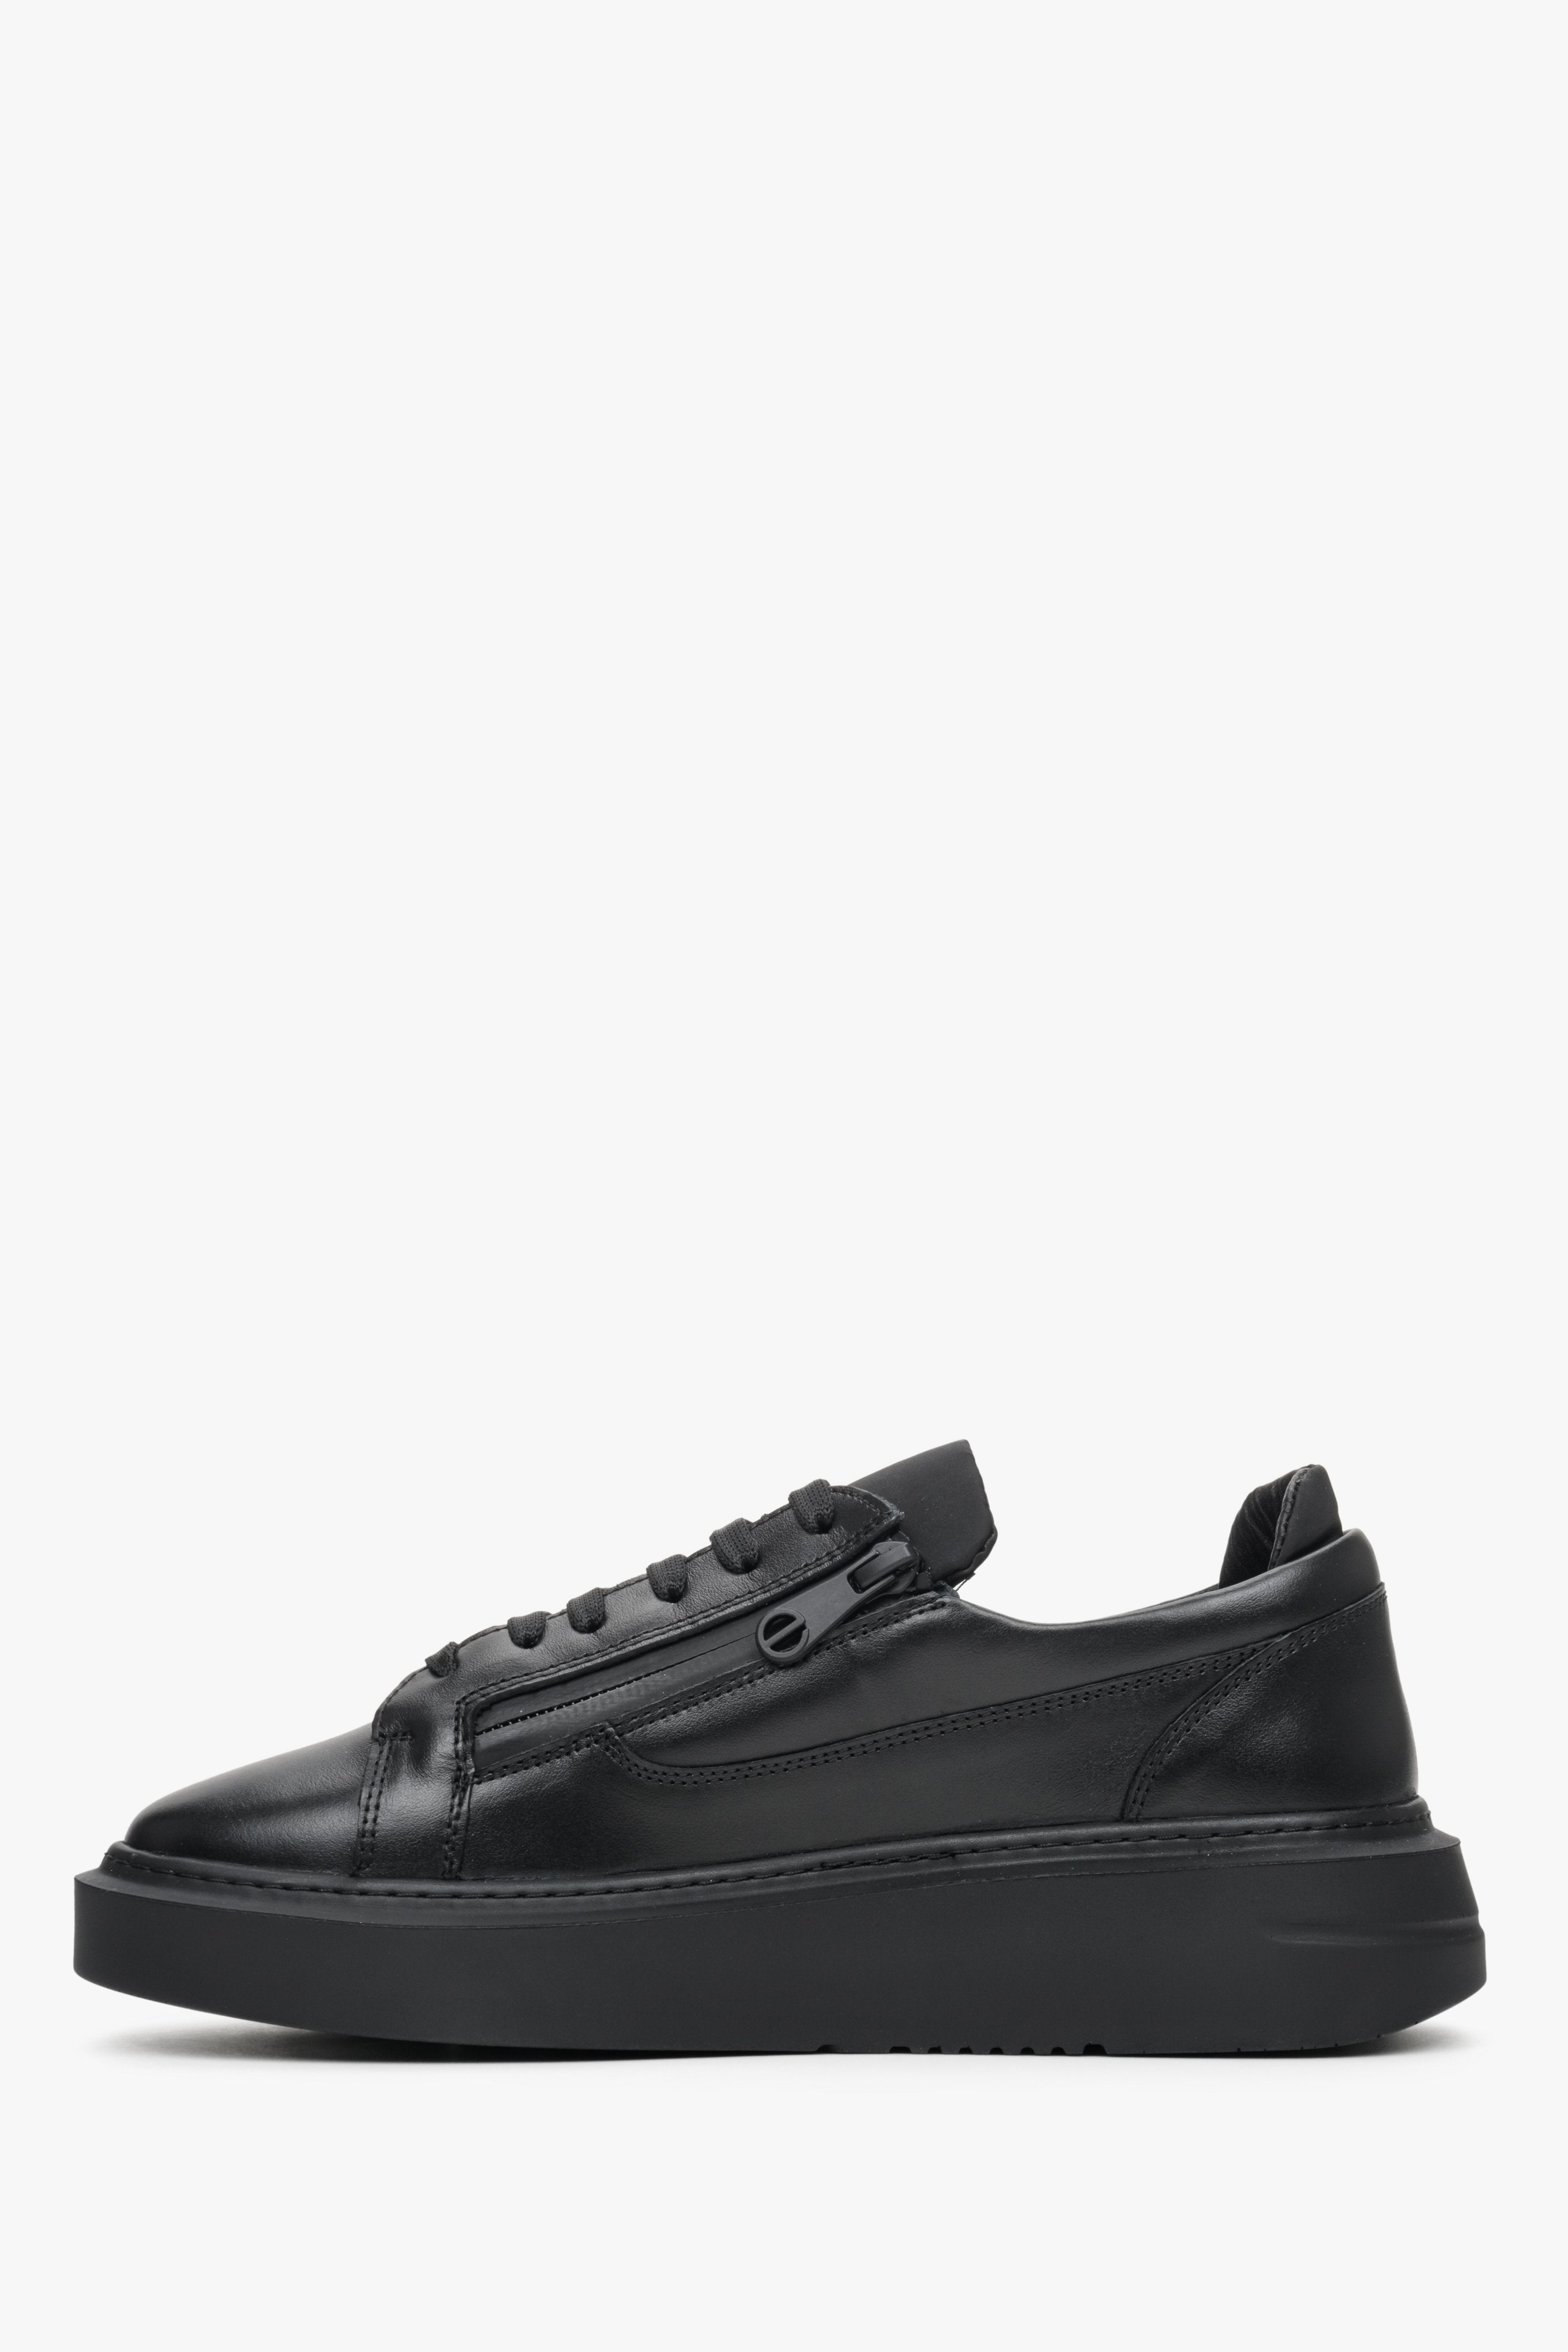 Czarne, skórzane sneakersy damskie Estro z ozdobnym suwakiem na wiosnę - profil butów.